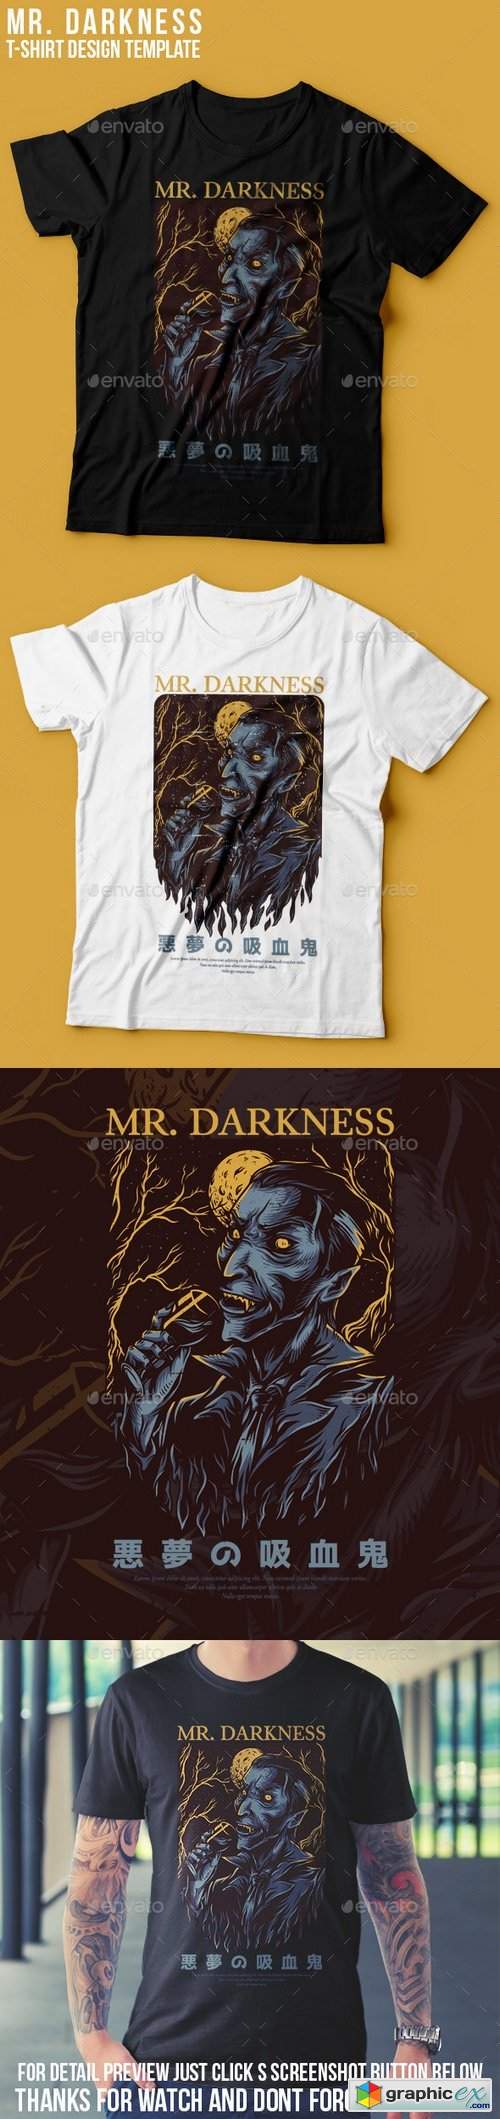 Mr. Darkness T-Shirt Design